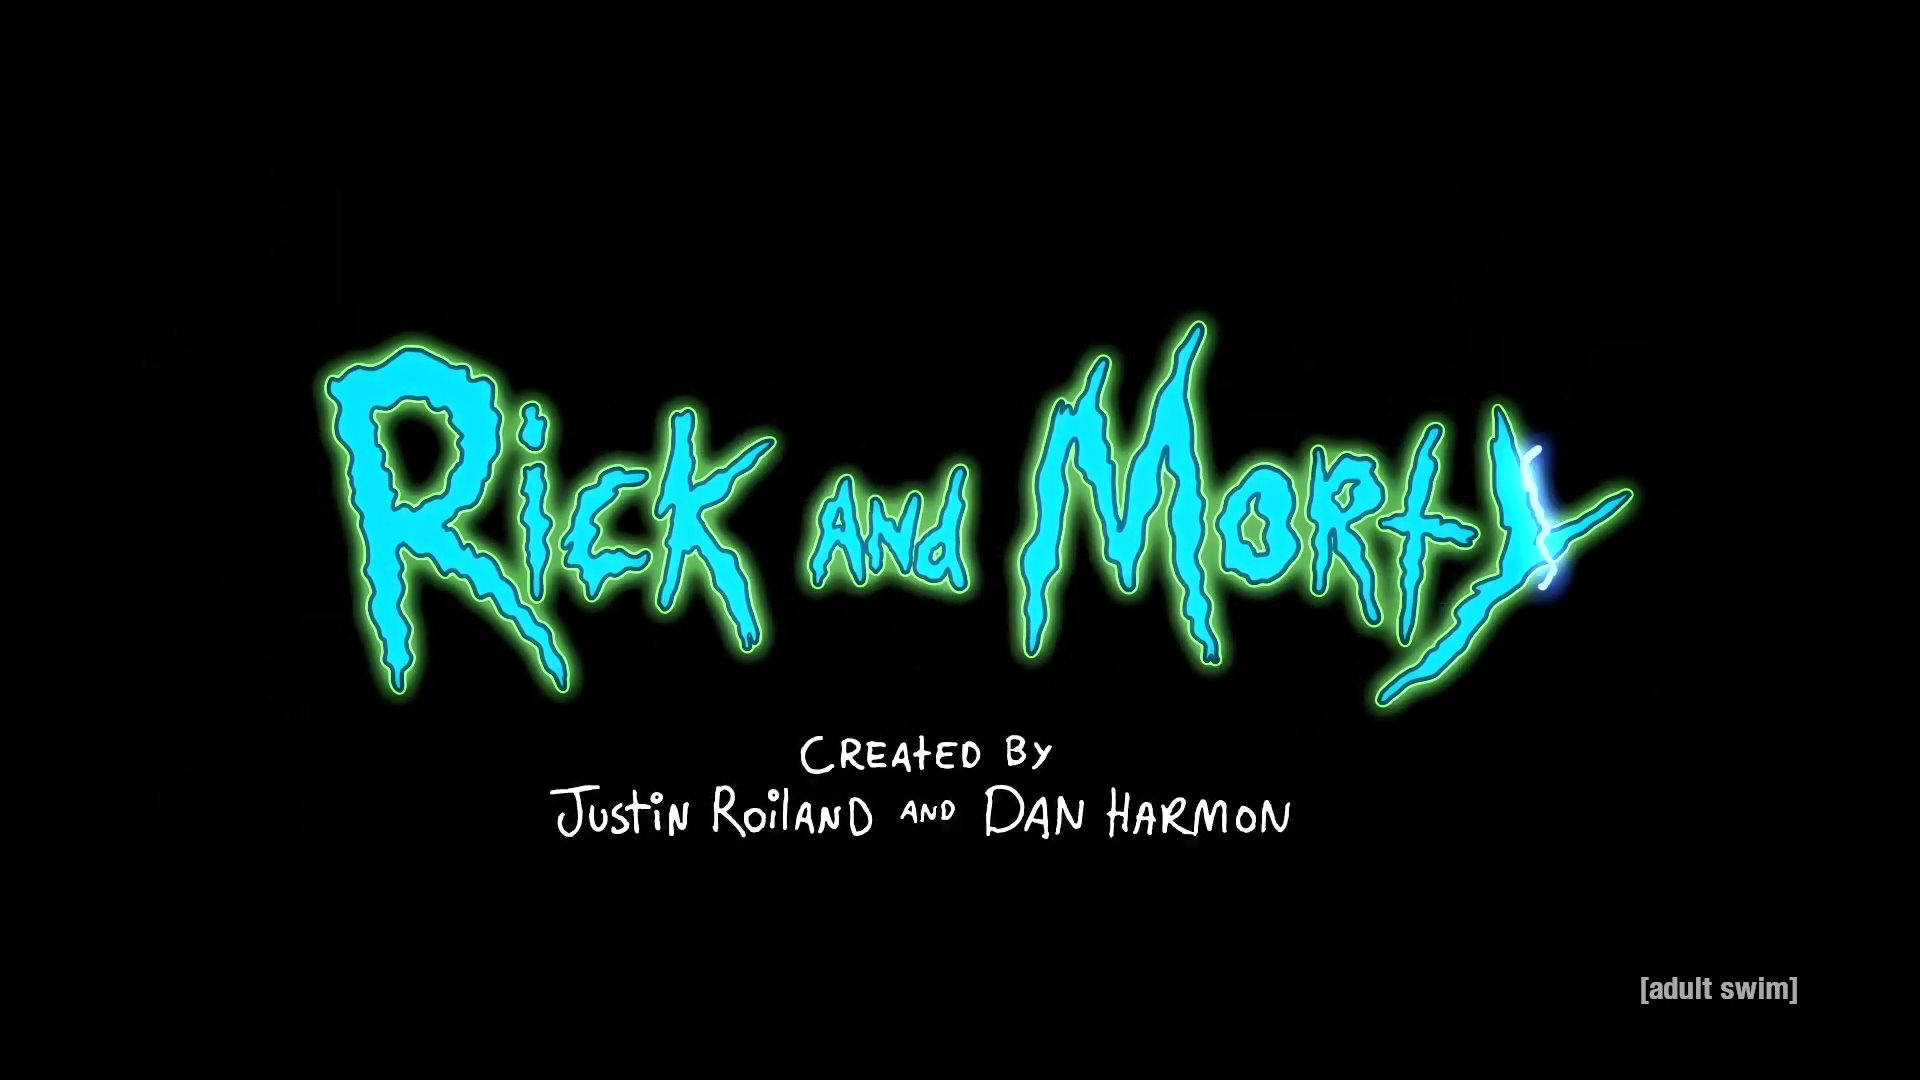 《瑞克和莫蒂》第5季前导预告片 第6季剧本创作已开始